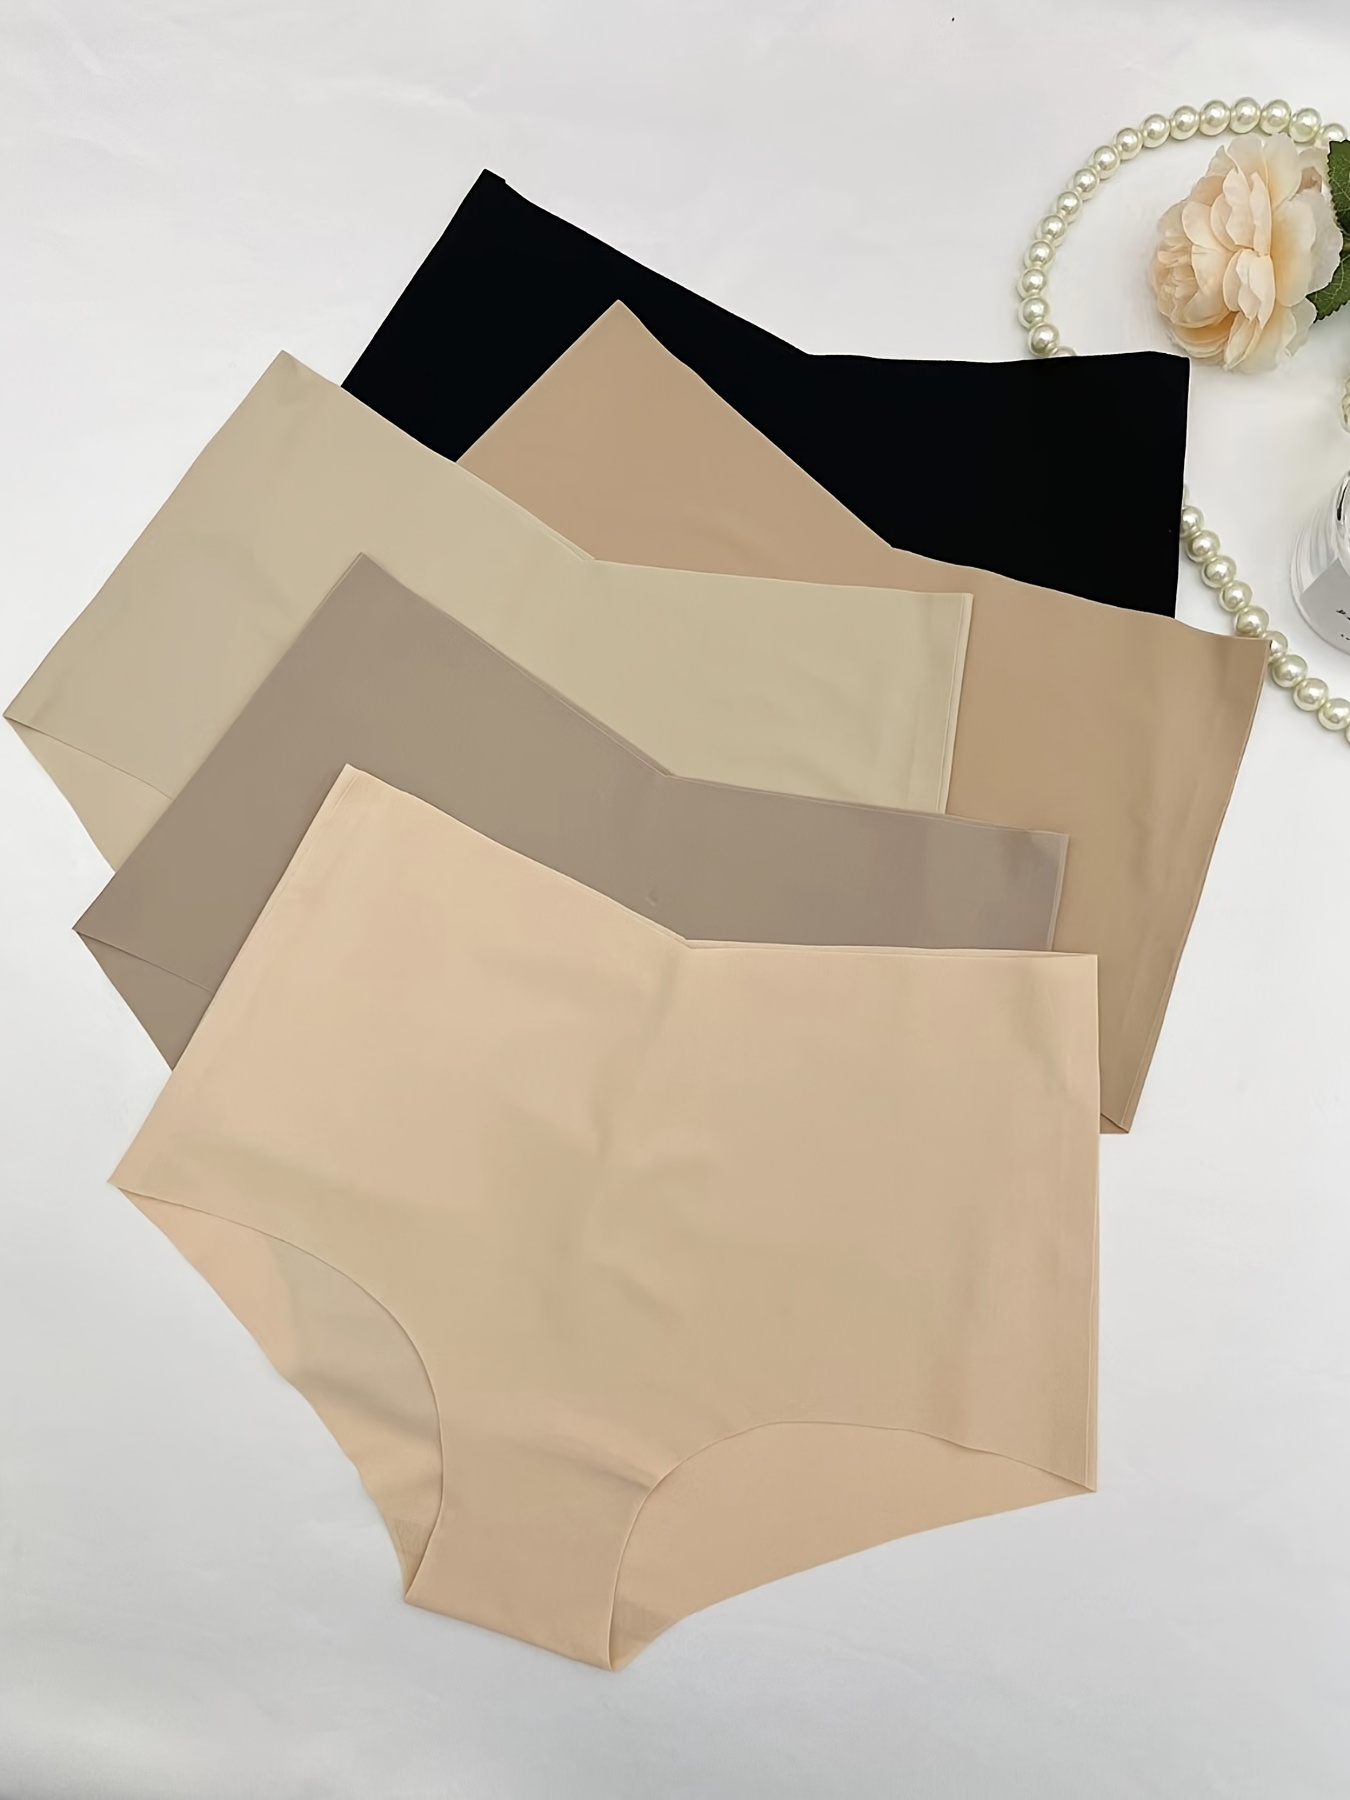 FallSweet No Show High Waist Briefs Underwear for Women Seamless